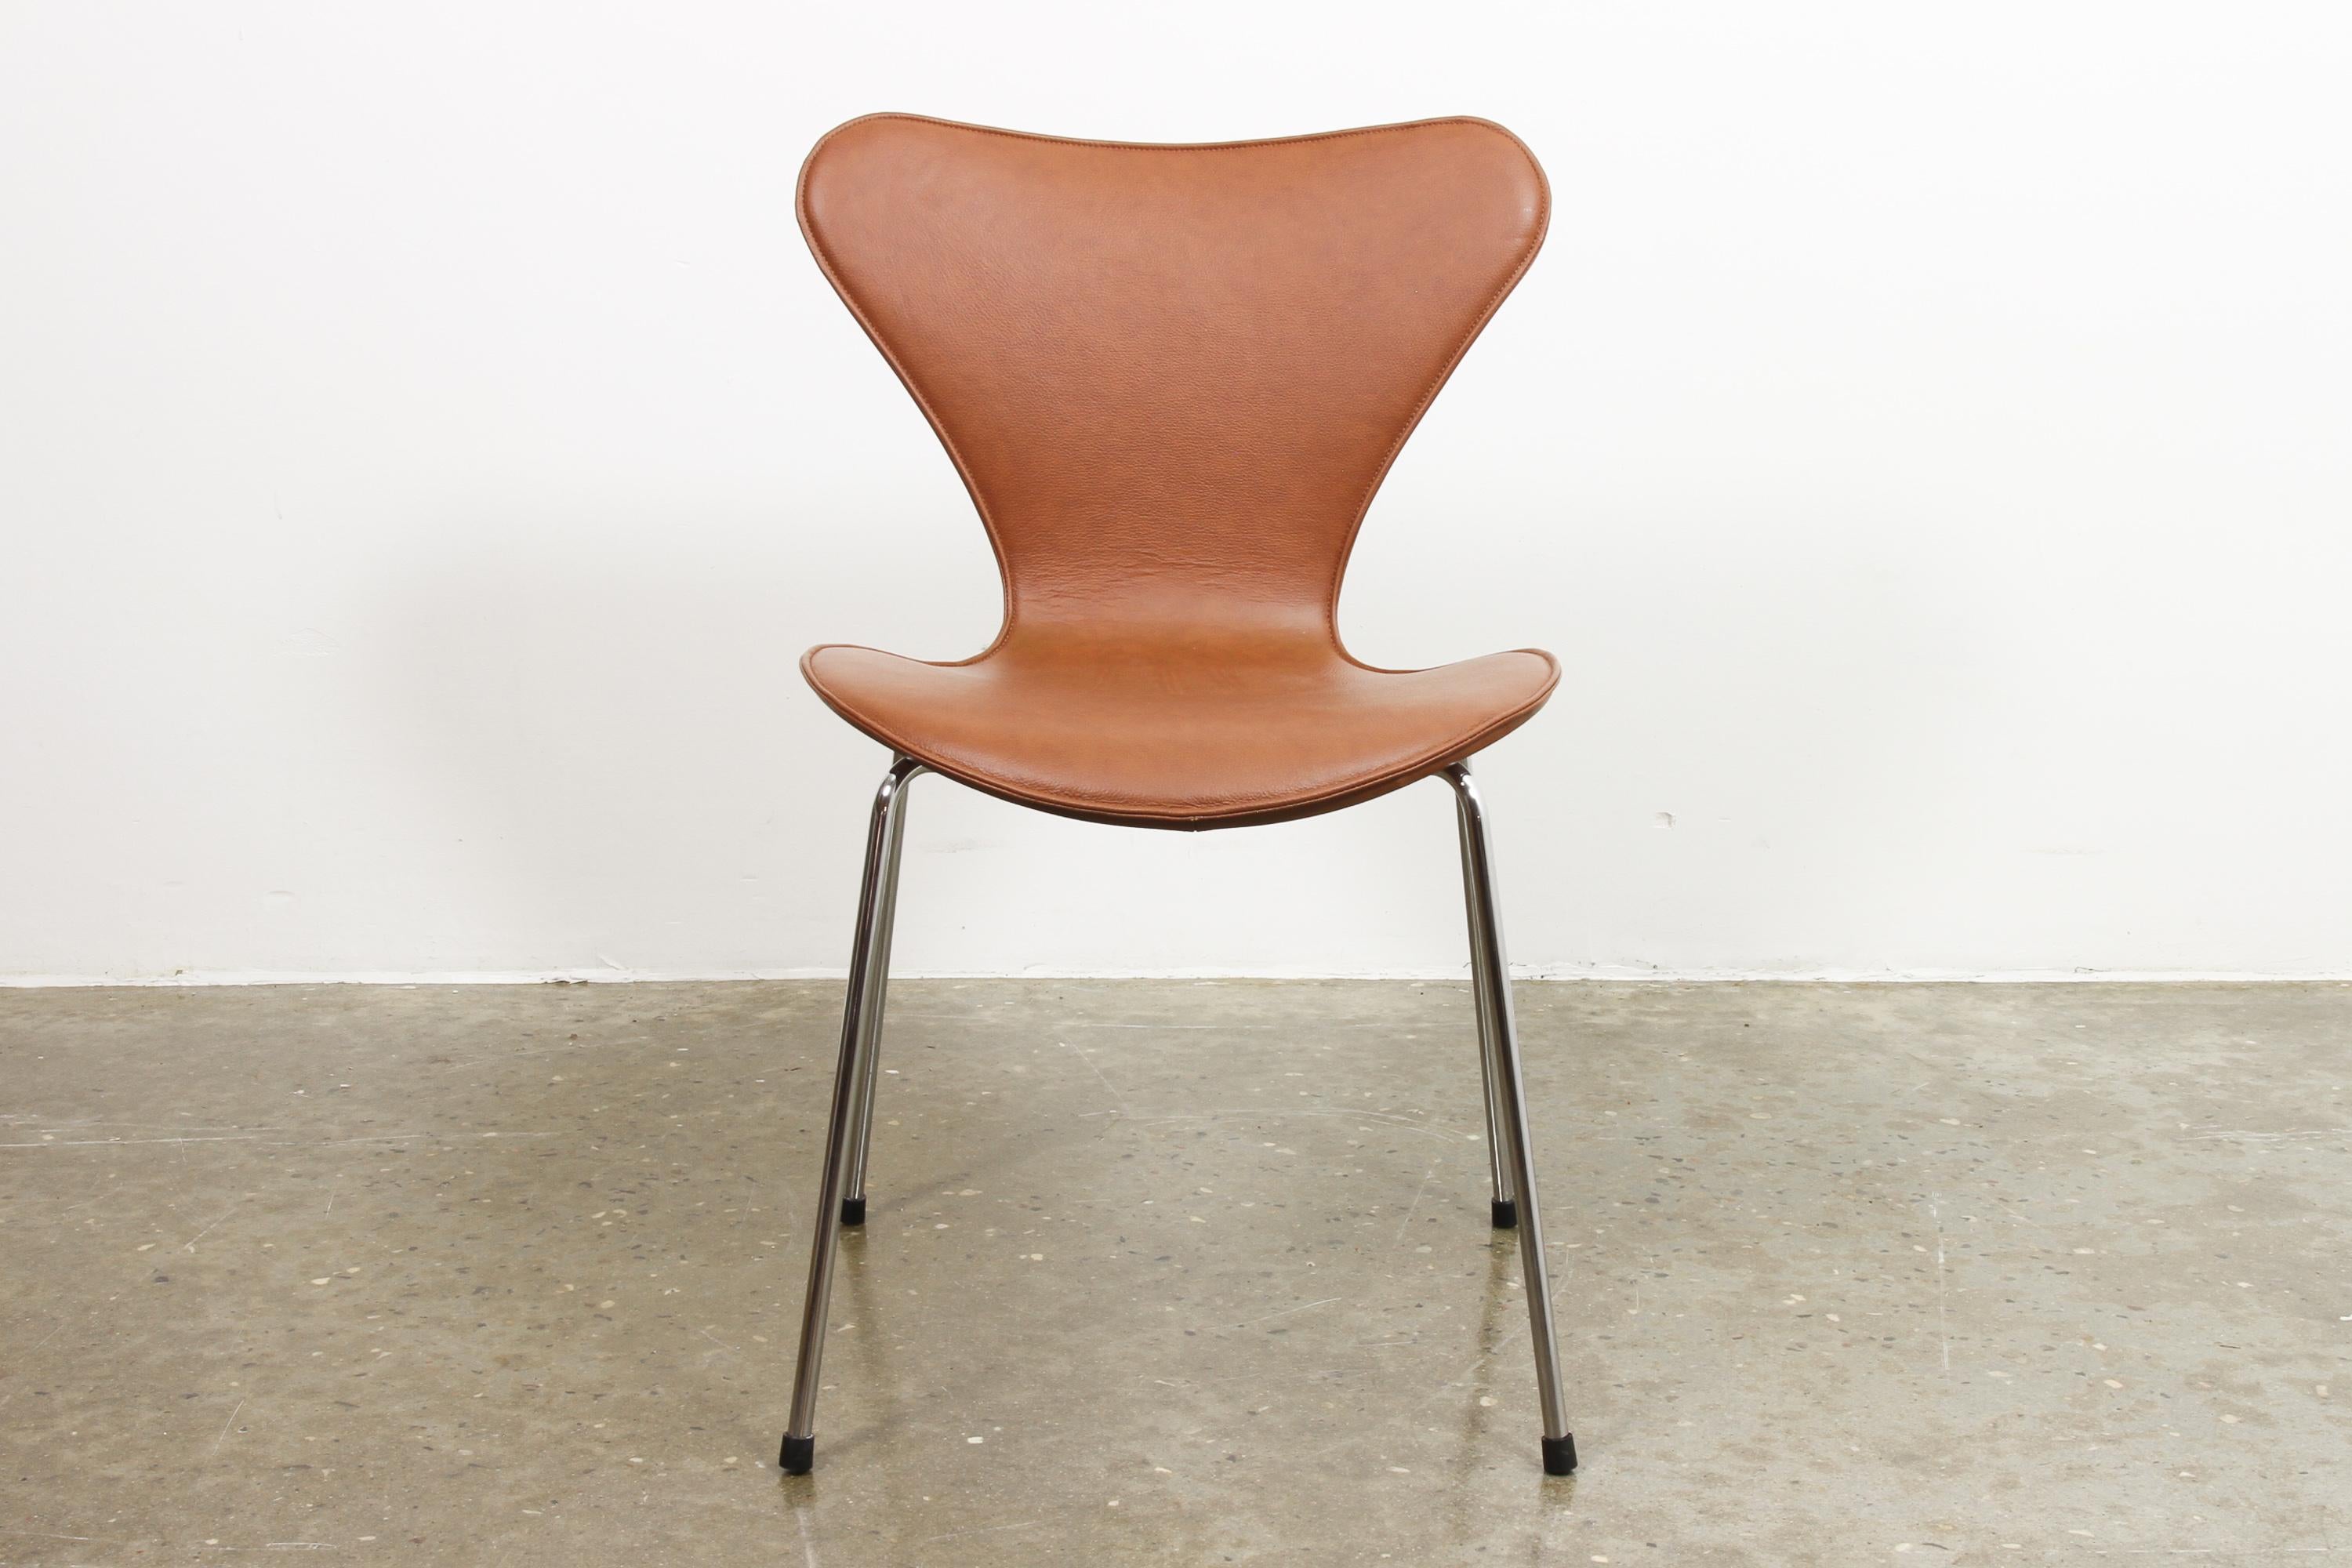 Chaise de salle à manger Arne Jacobsen Modèle 3107 en cuir cognac.
Modèle 3107 également connu sous le nom de série 7, Butterfly Chair ou en danois Syveren. L'un des designs les plus célèbres et les plus emblématiques de l'architecte danois Arne